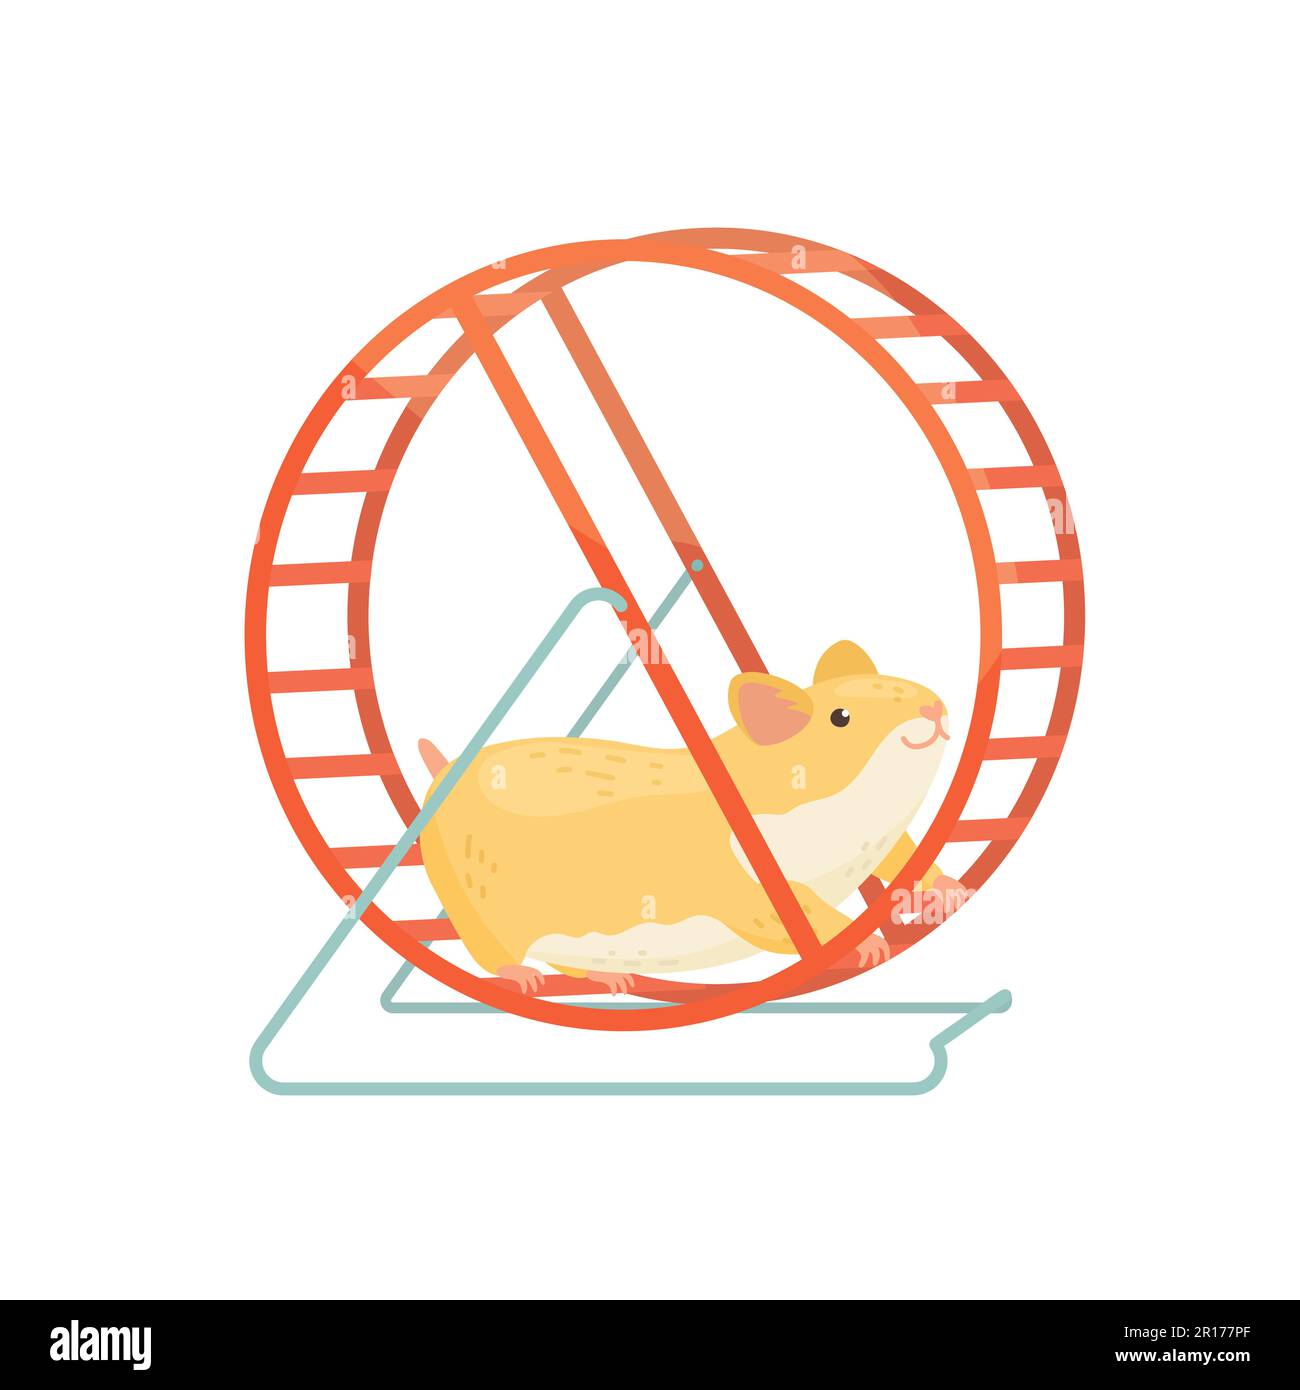 Hamster läuft im Rad. Vektor-Cartoon-Illustration Stock-Vektorgrafik - Alamy